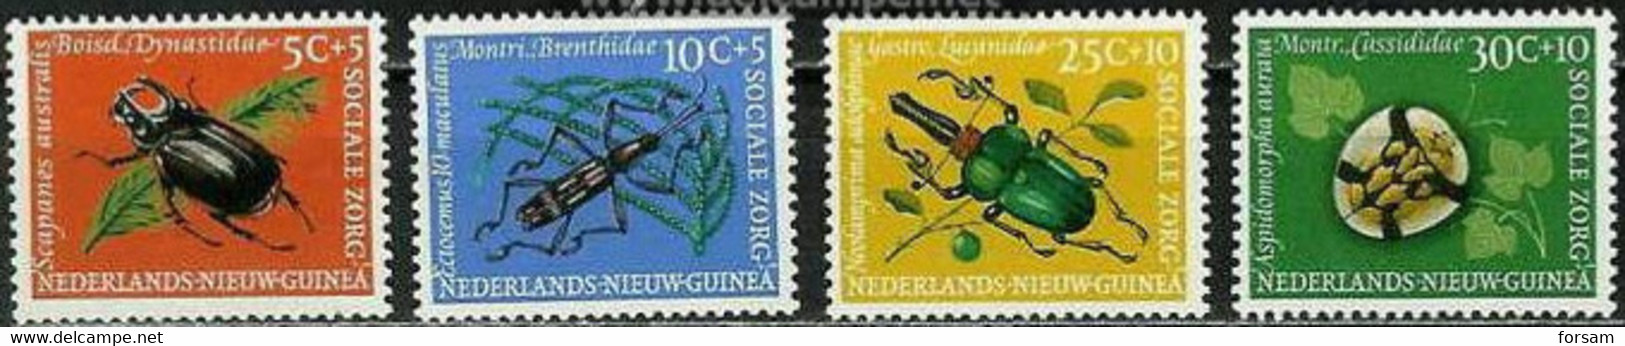 NETHERLANDS NEW GUINEA..1961..Michel # 69-72...MLH. - Niederländisch-Neuguinea